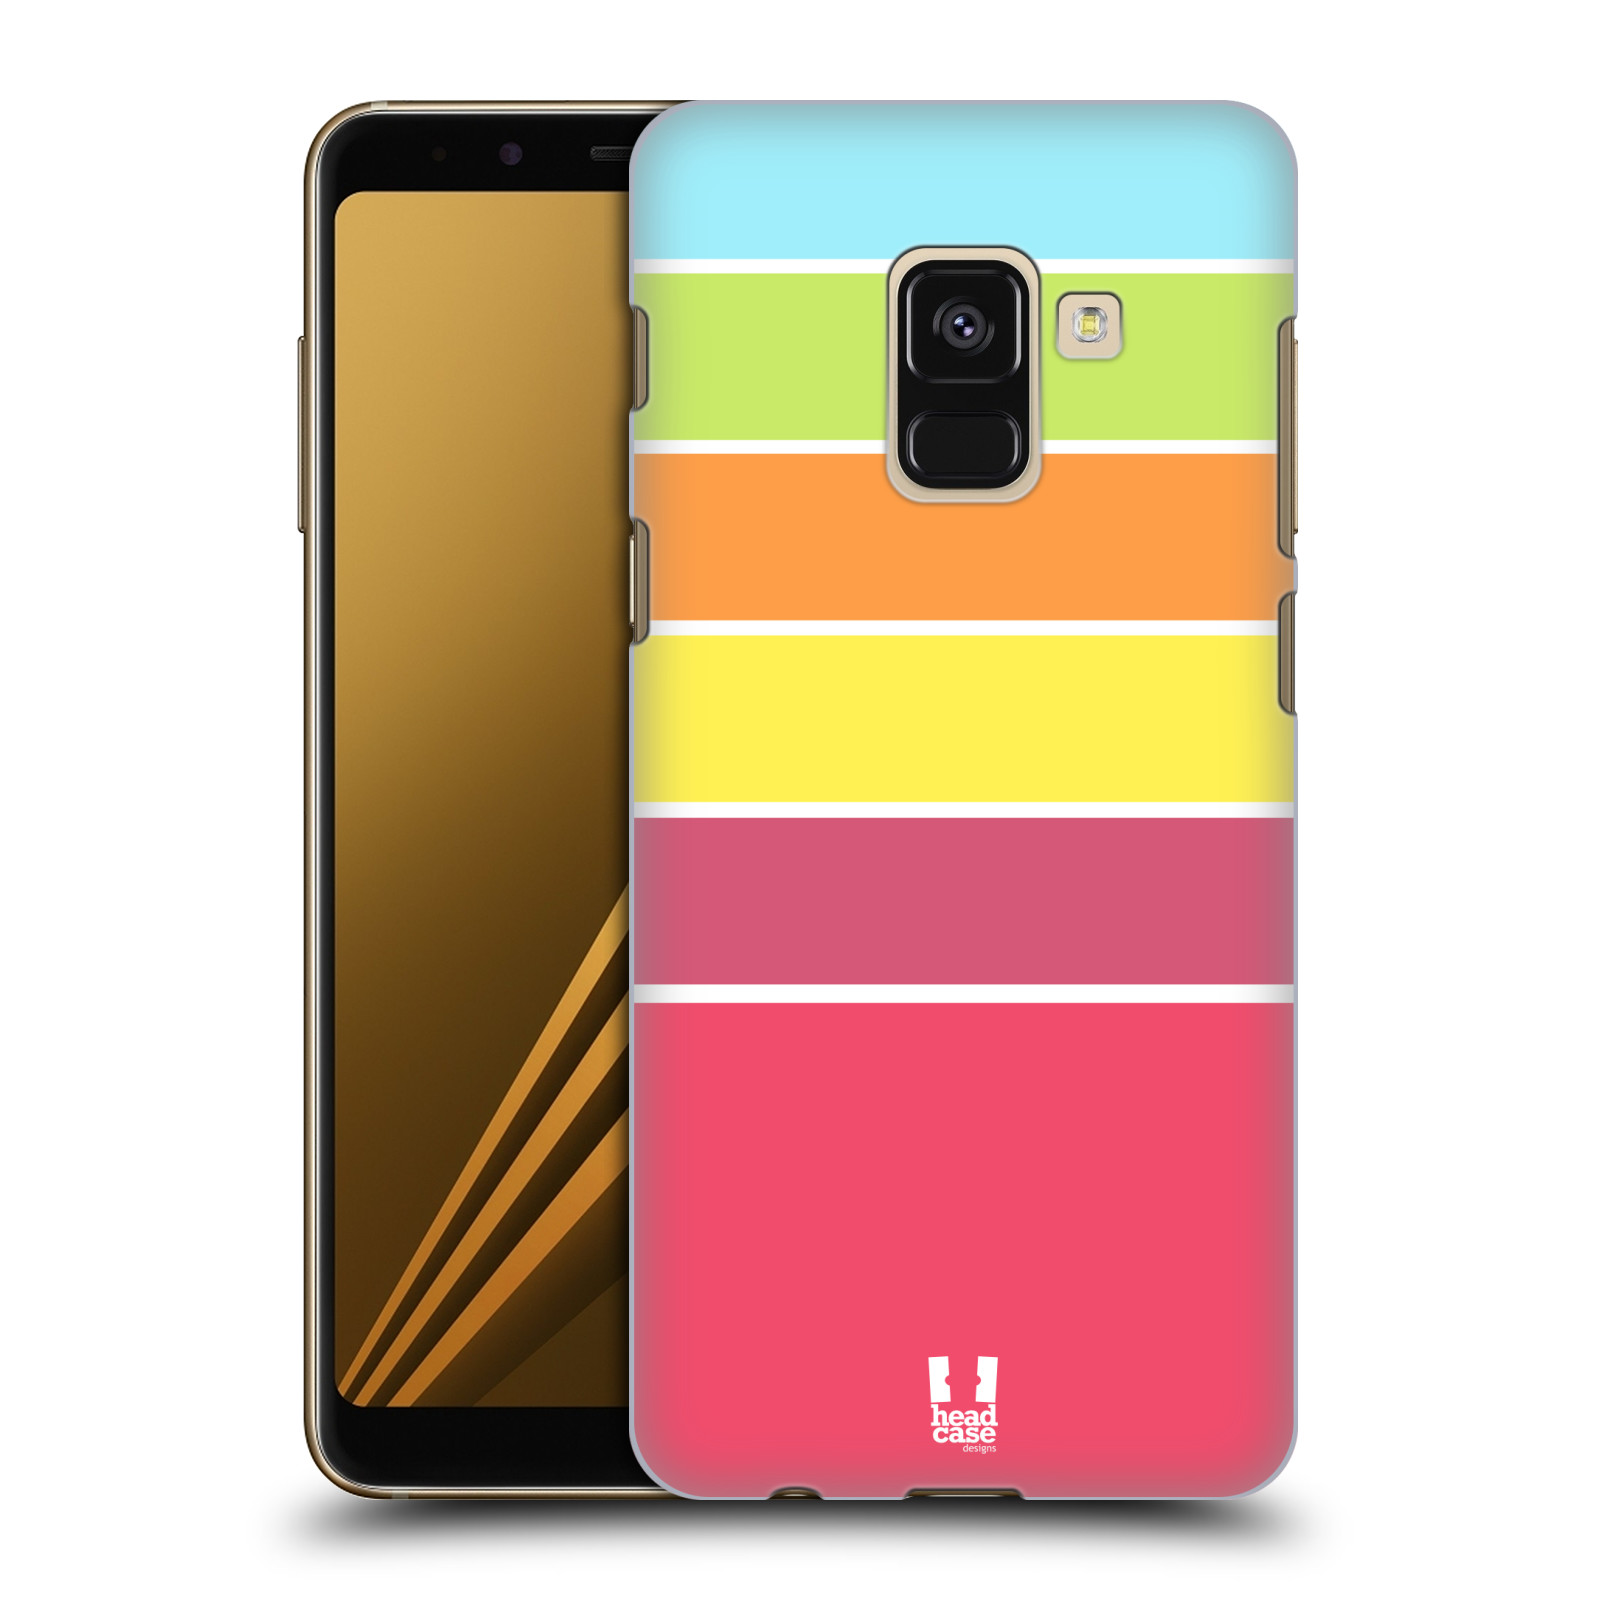 Zadní obal pro mobil Samsung Galaxy A8+ - HEAD CASE - barevné pruhy růžová, oranžová